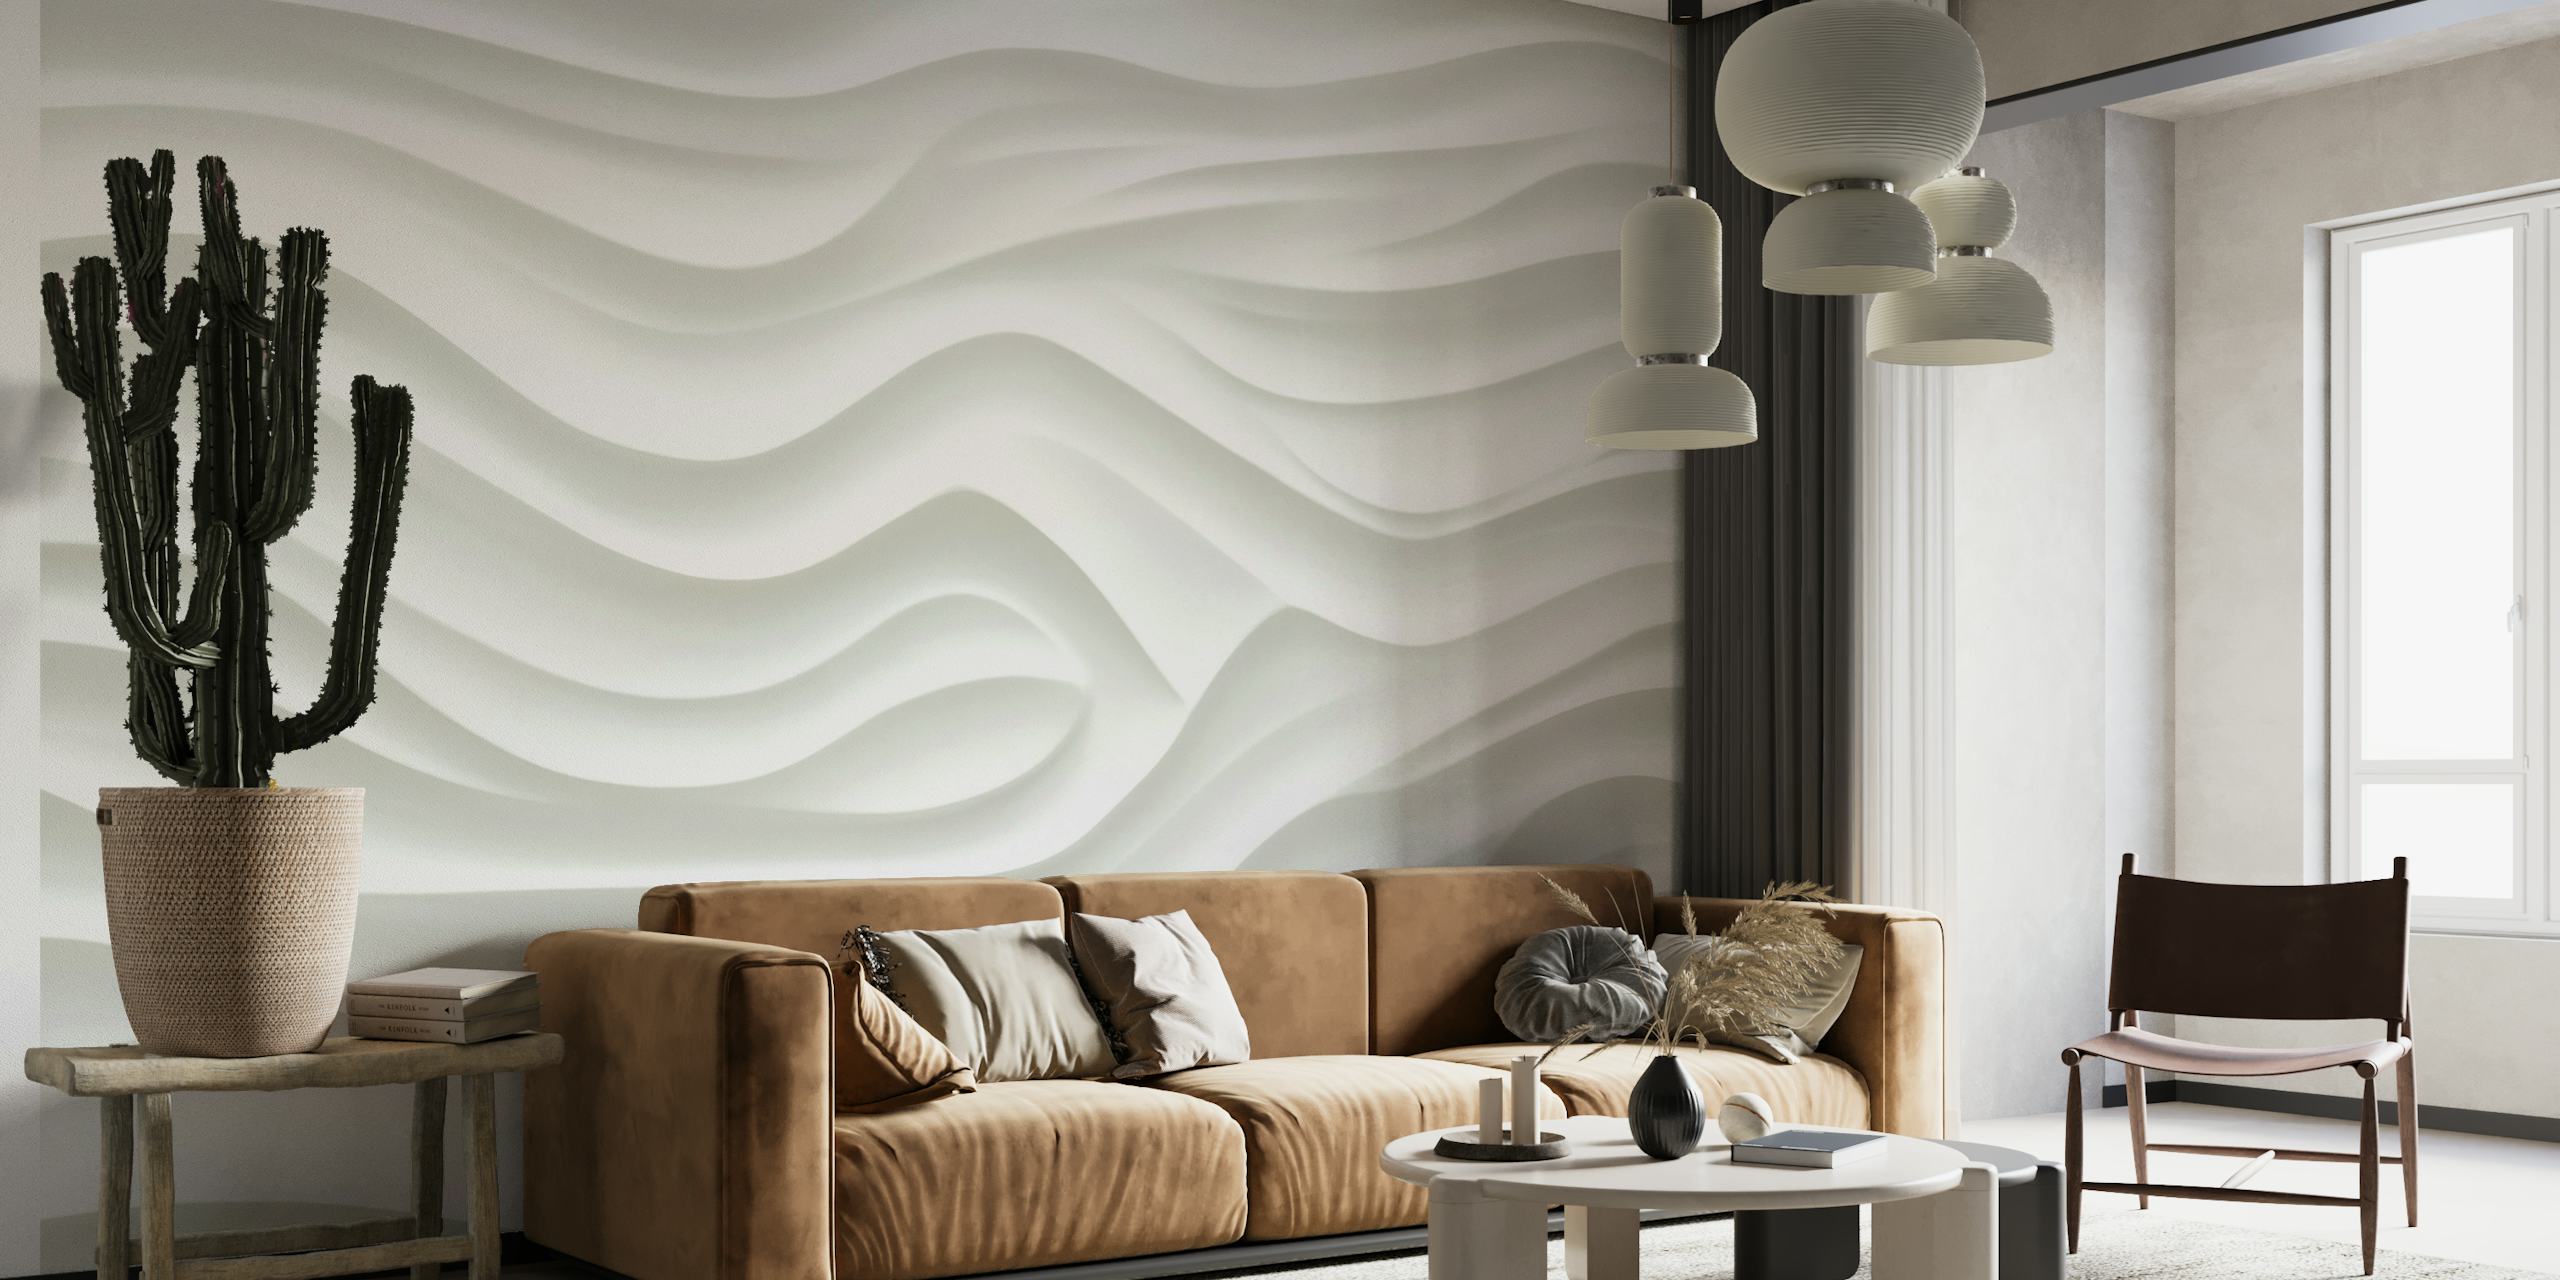 Valkoinen kohokuvioitu teksturoitu seinämaalaus, jossa on 3D-tyyppinen veistoksellinen pintavaikutelma.